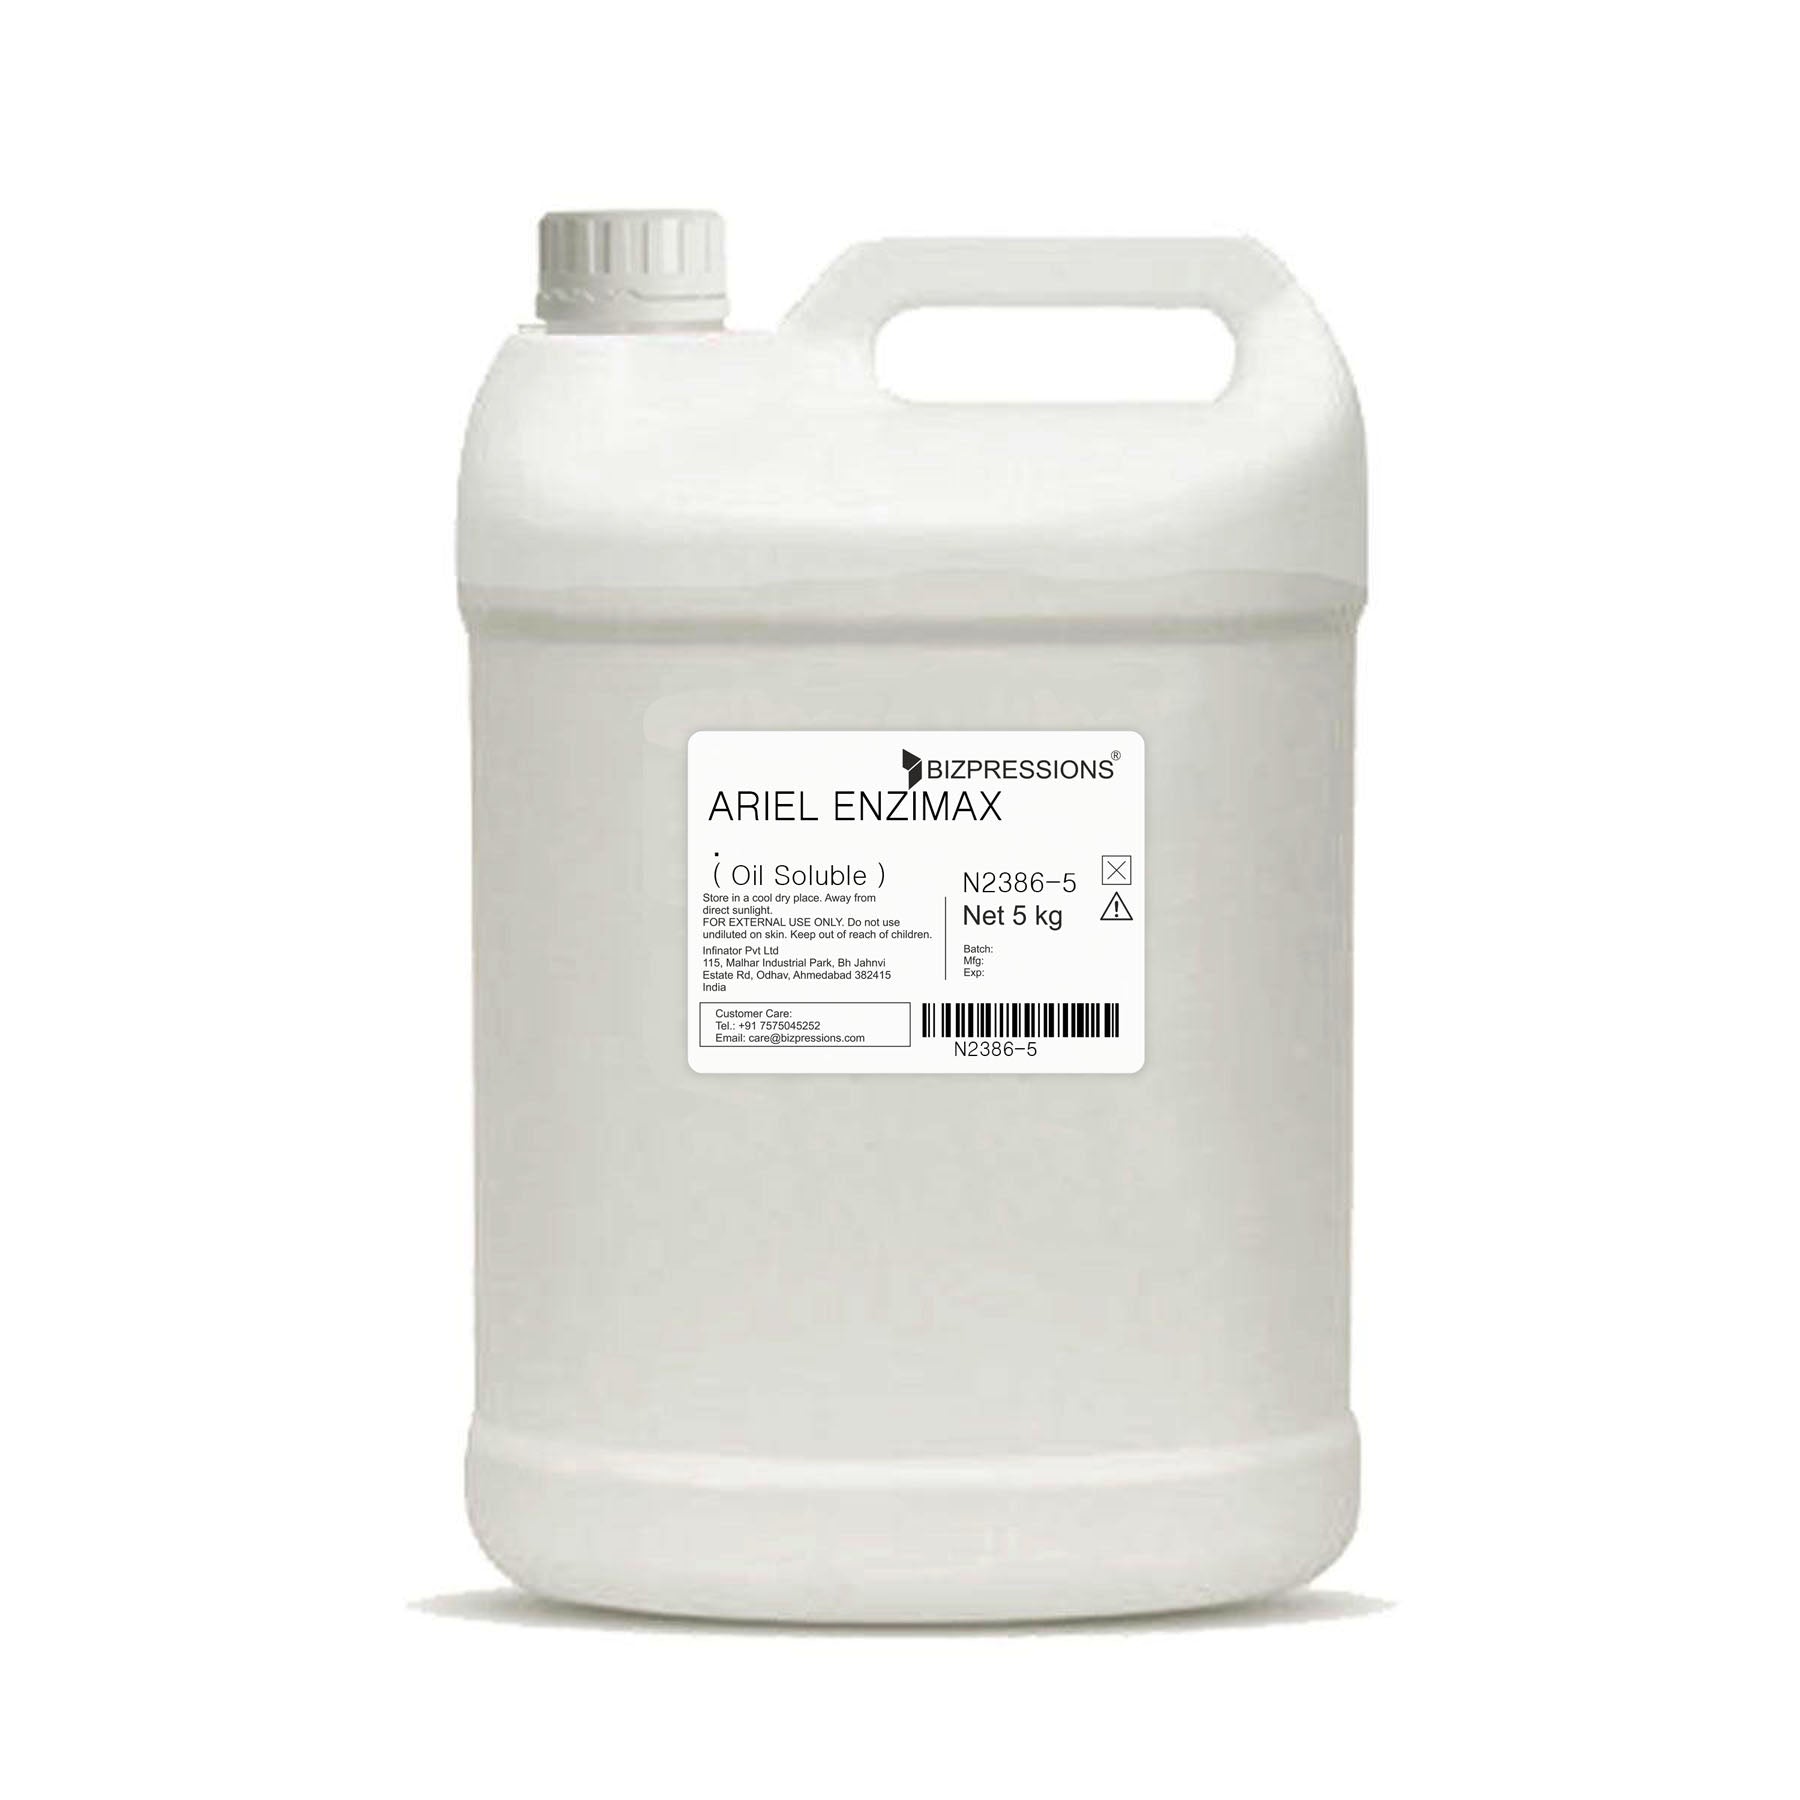 ARIEL ENZIMAX - Fragrance ( Oil Soluble ) - 5 kg